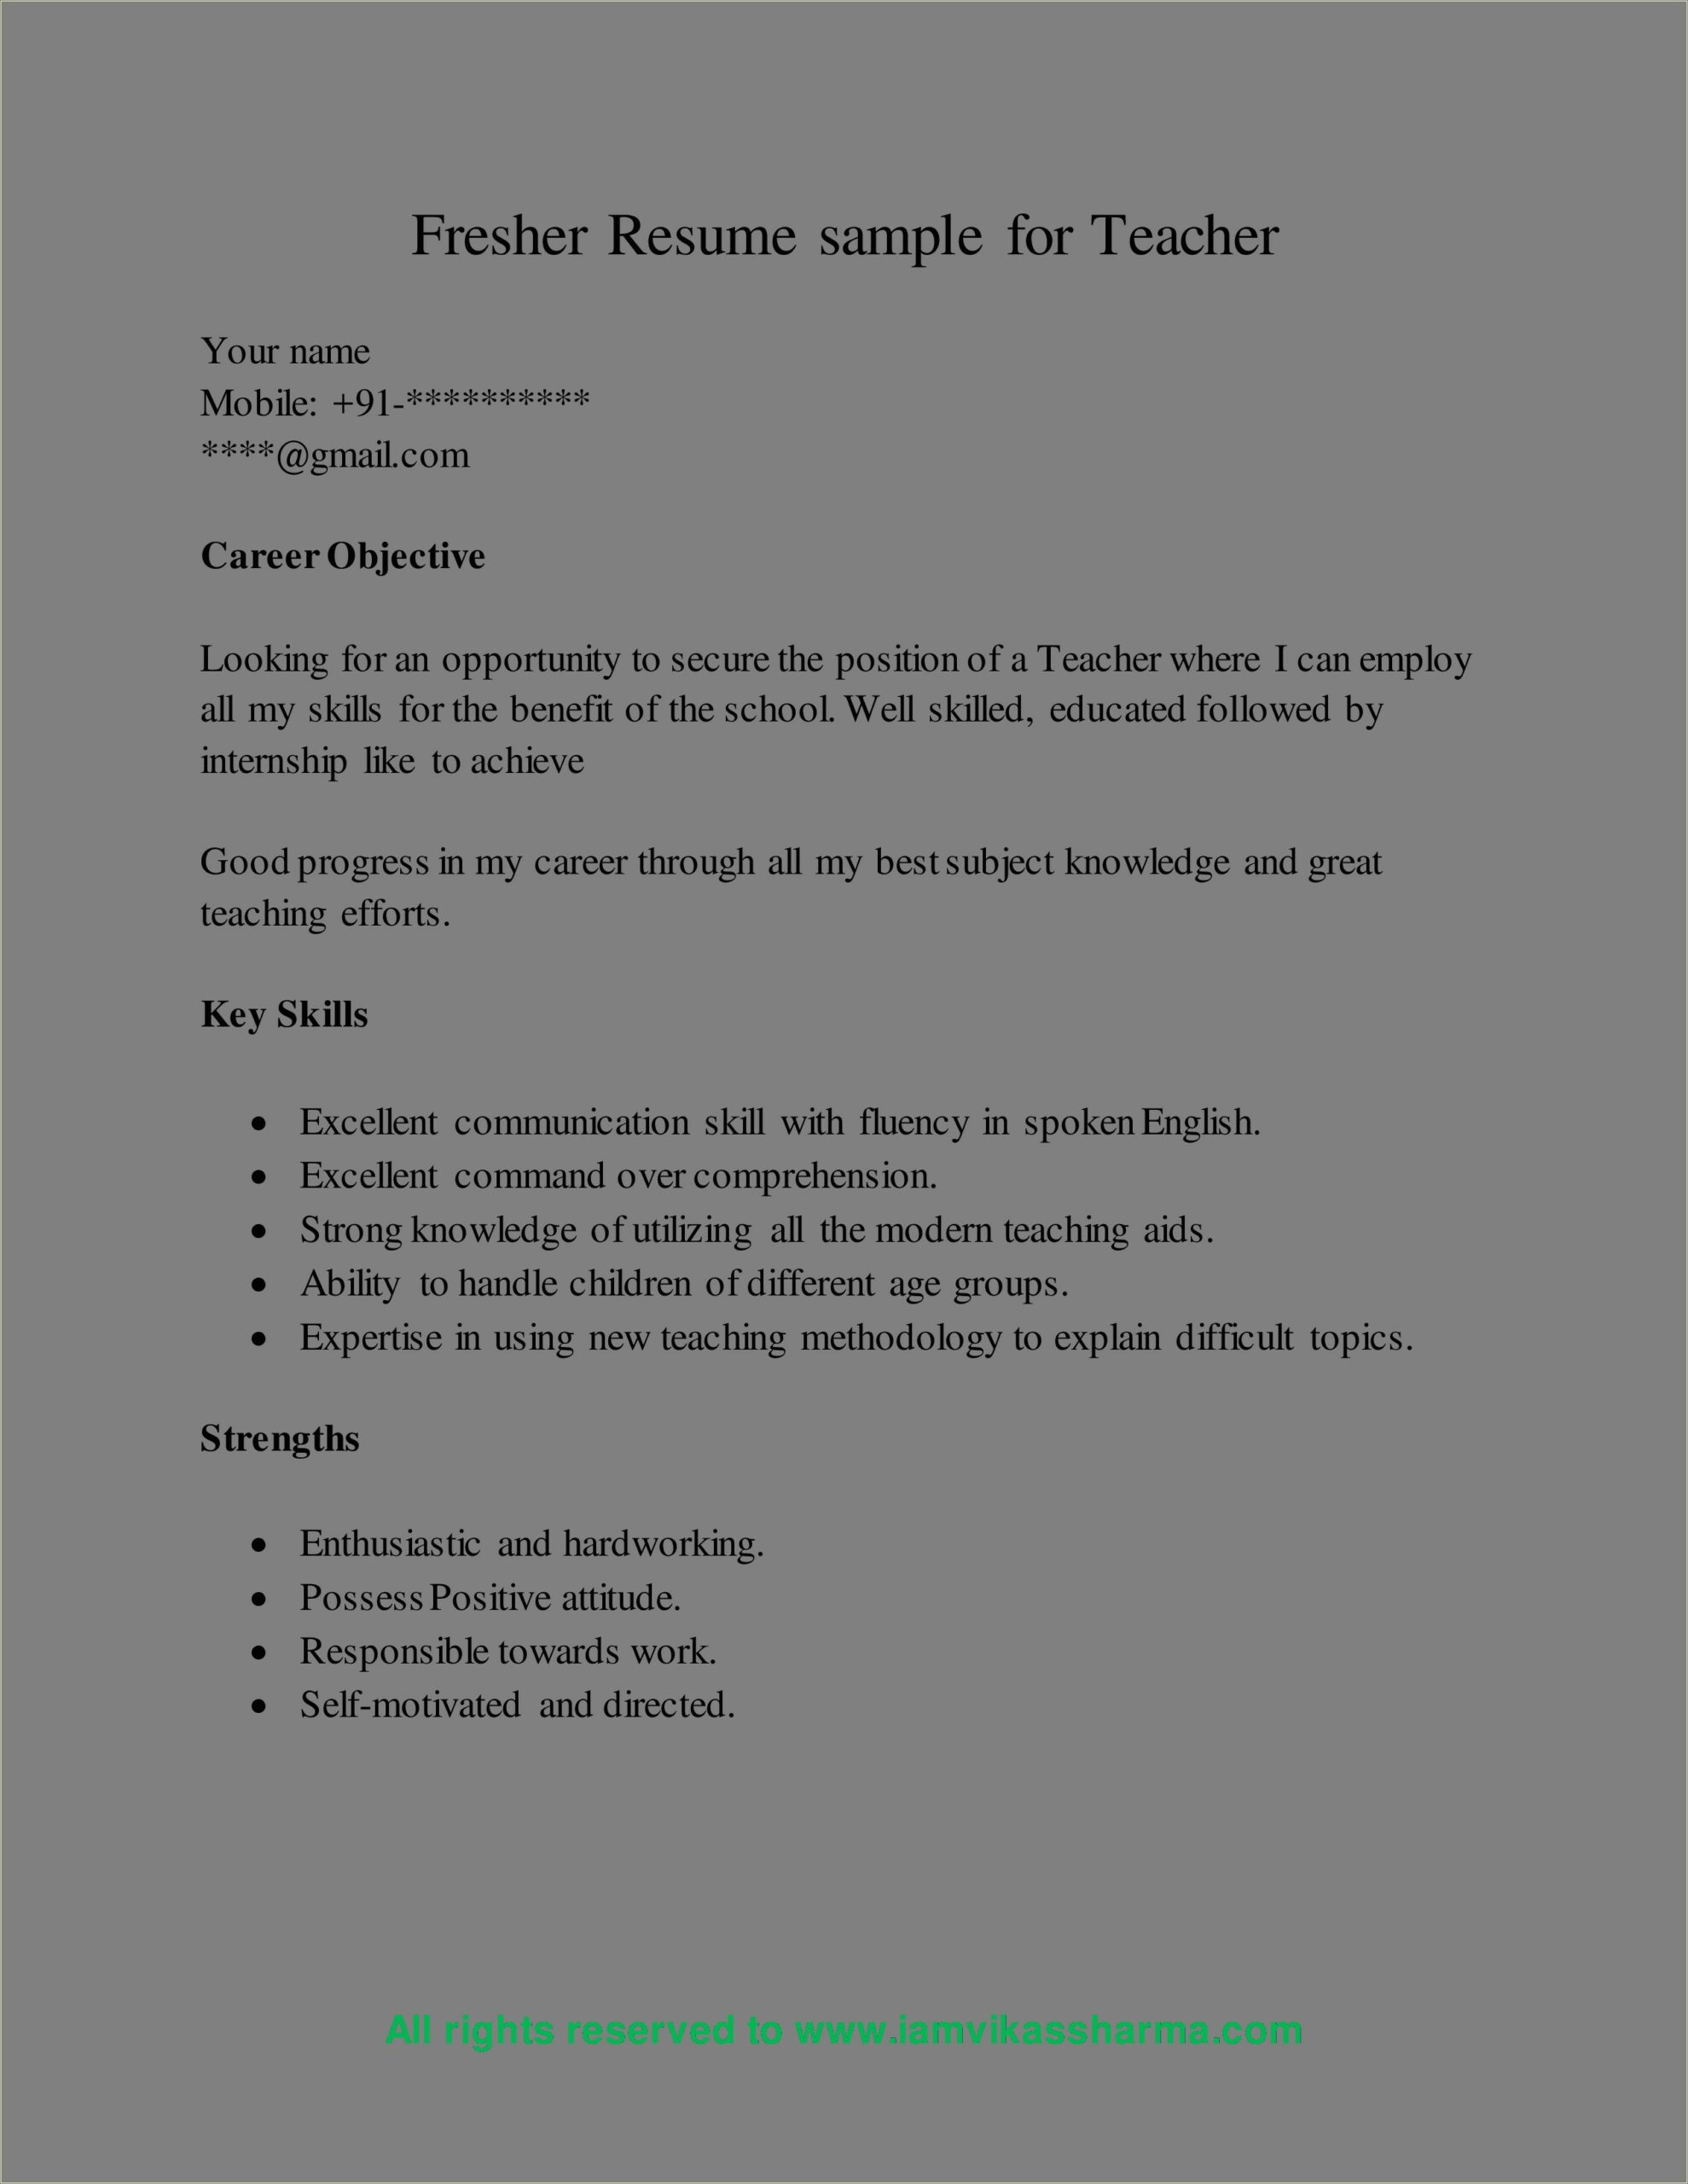 Sample Resume Format For Freshers Teachers